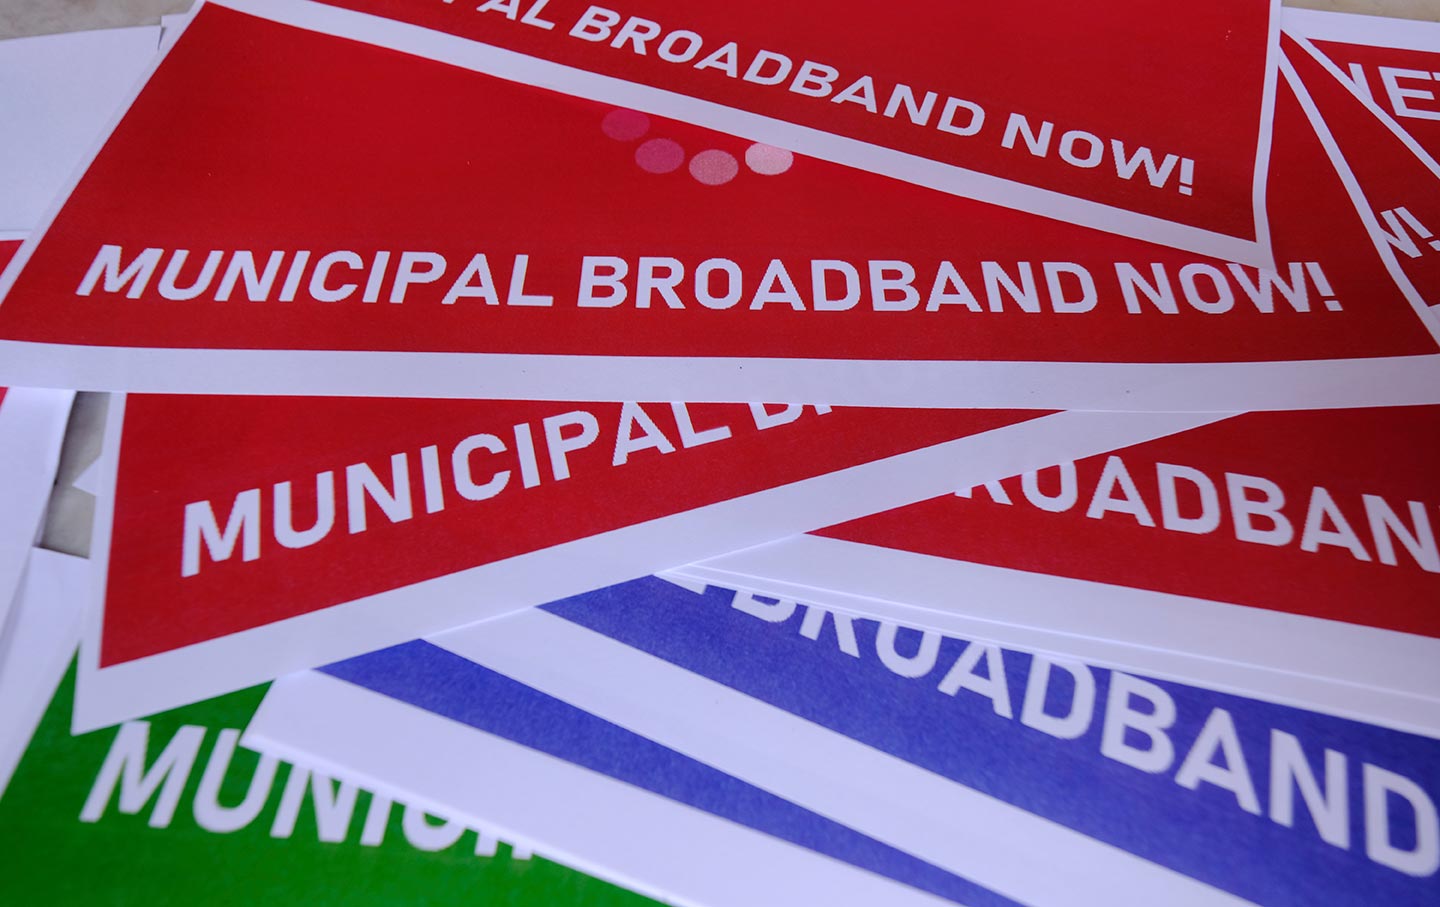 Municipal broadband